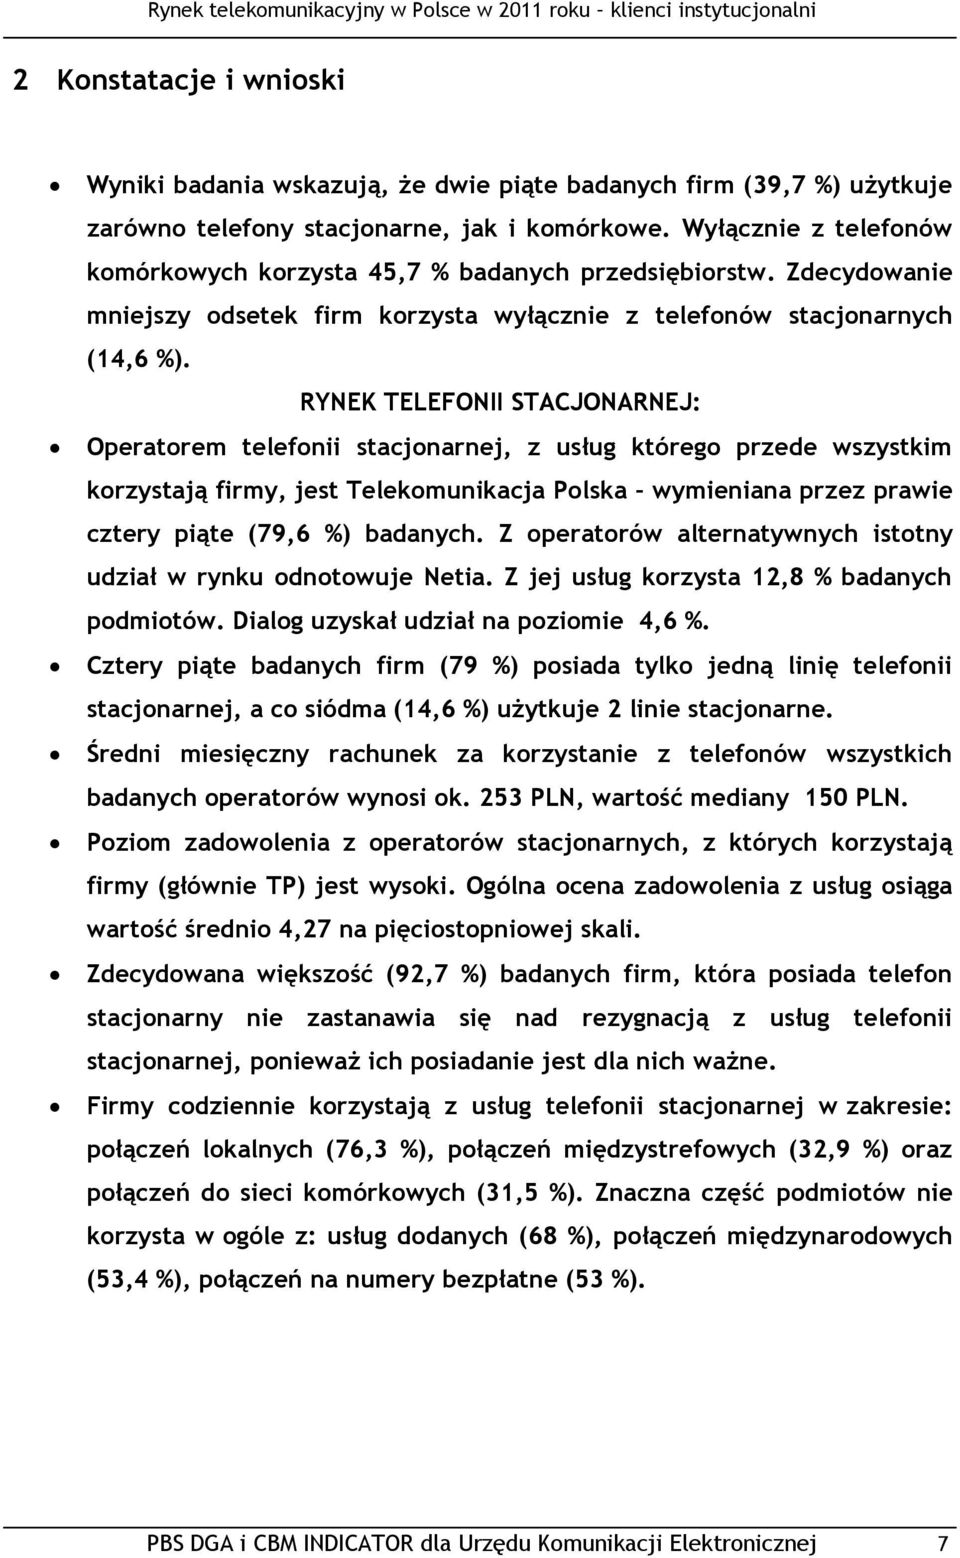 RYNEK TELEFONII STACJONARNEJ: Operatorem telefonii stacjonarnej, z usług którego przede wszystkim korzystają firmy, jest Telekomunikacja Polska wymieniana przez prawie cztery piąte (79,6 %) badanych.